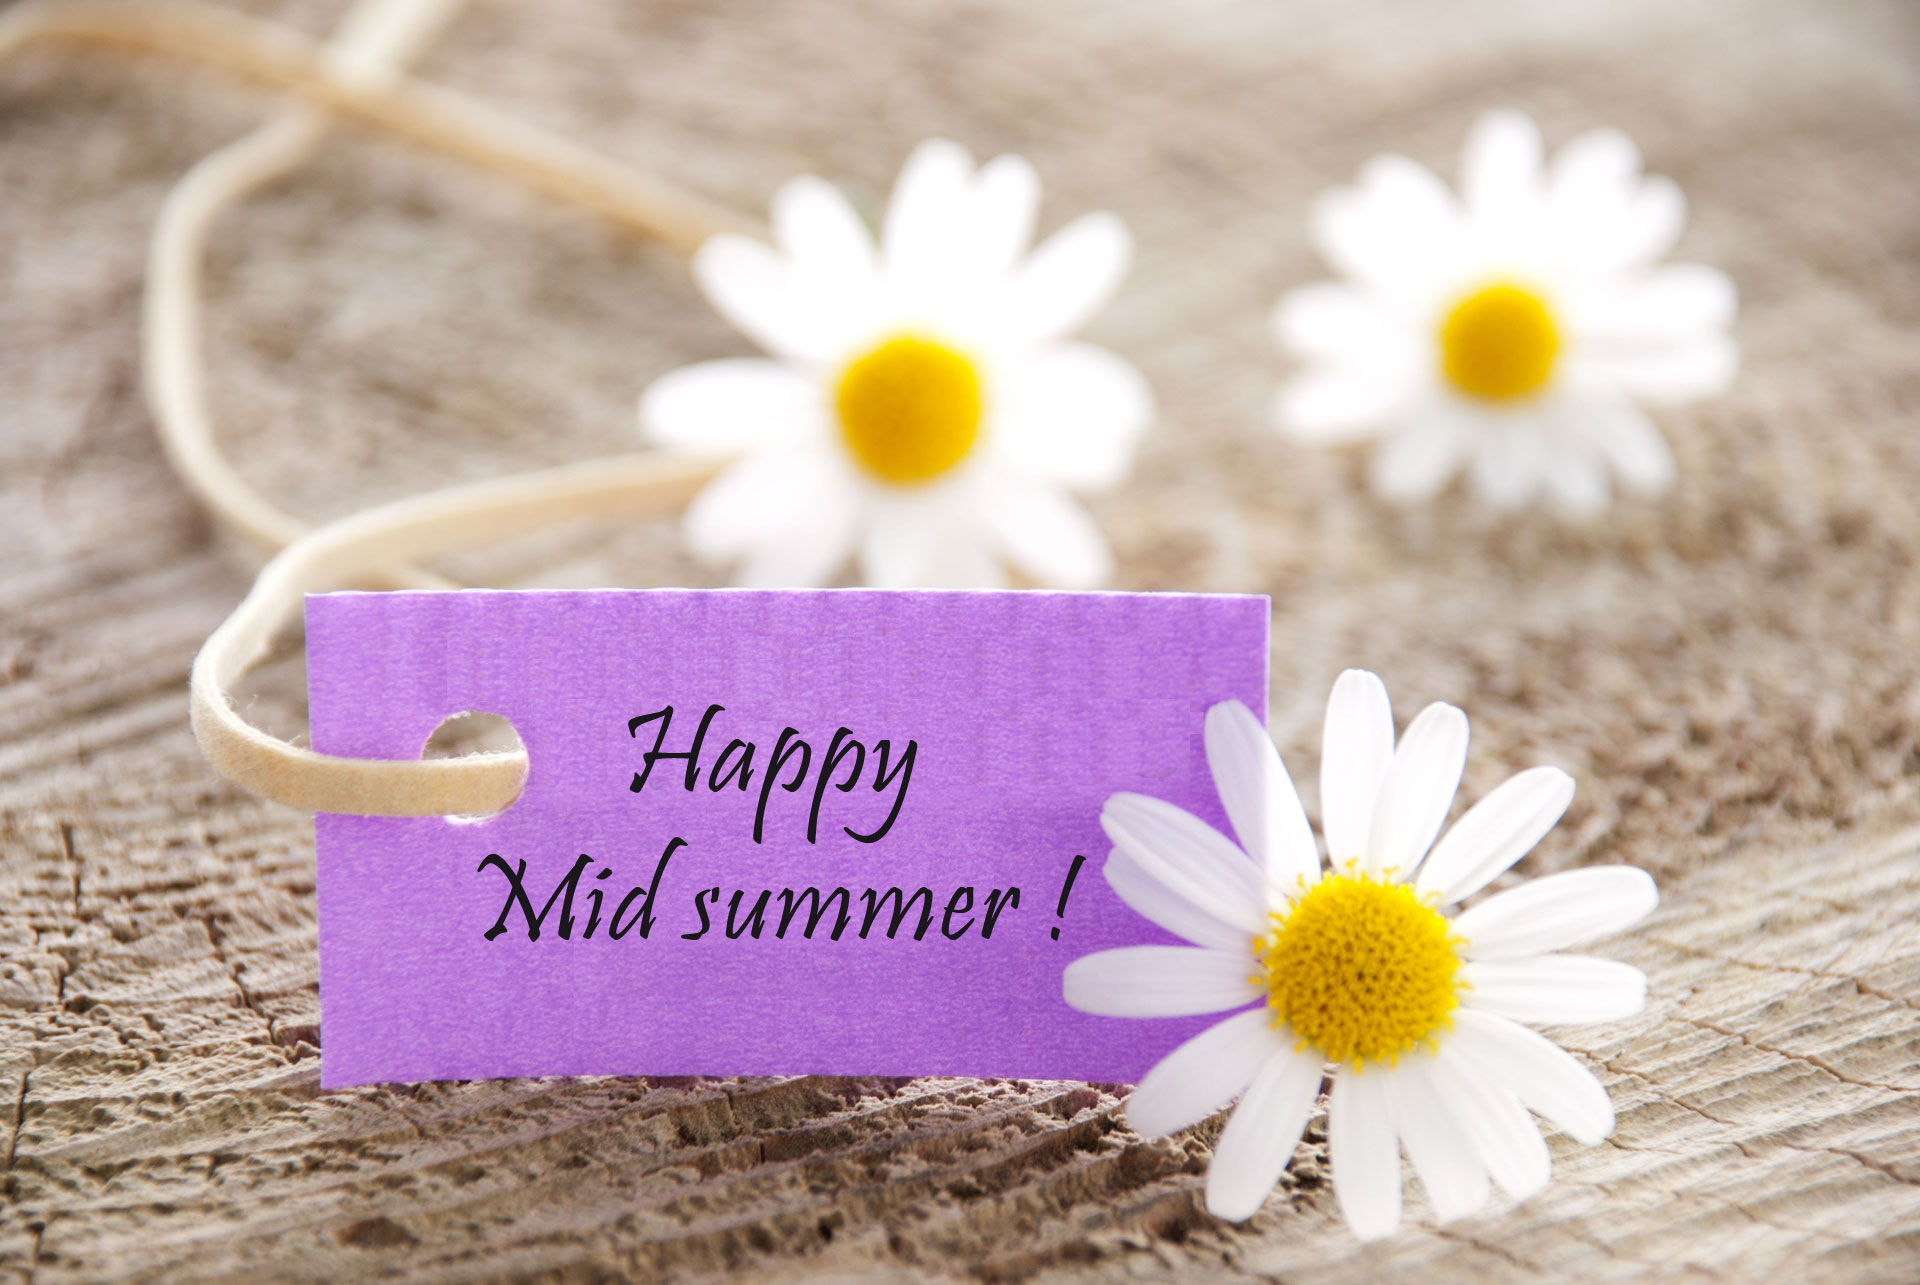 Happy Midsummer!